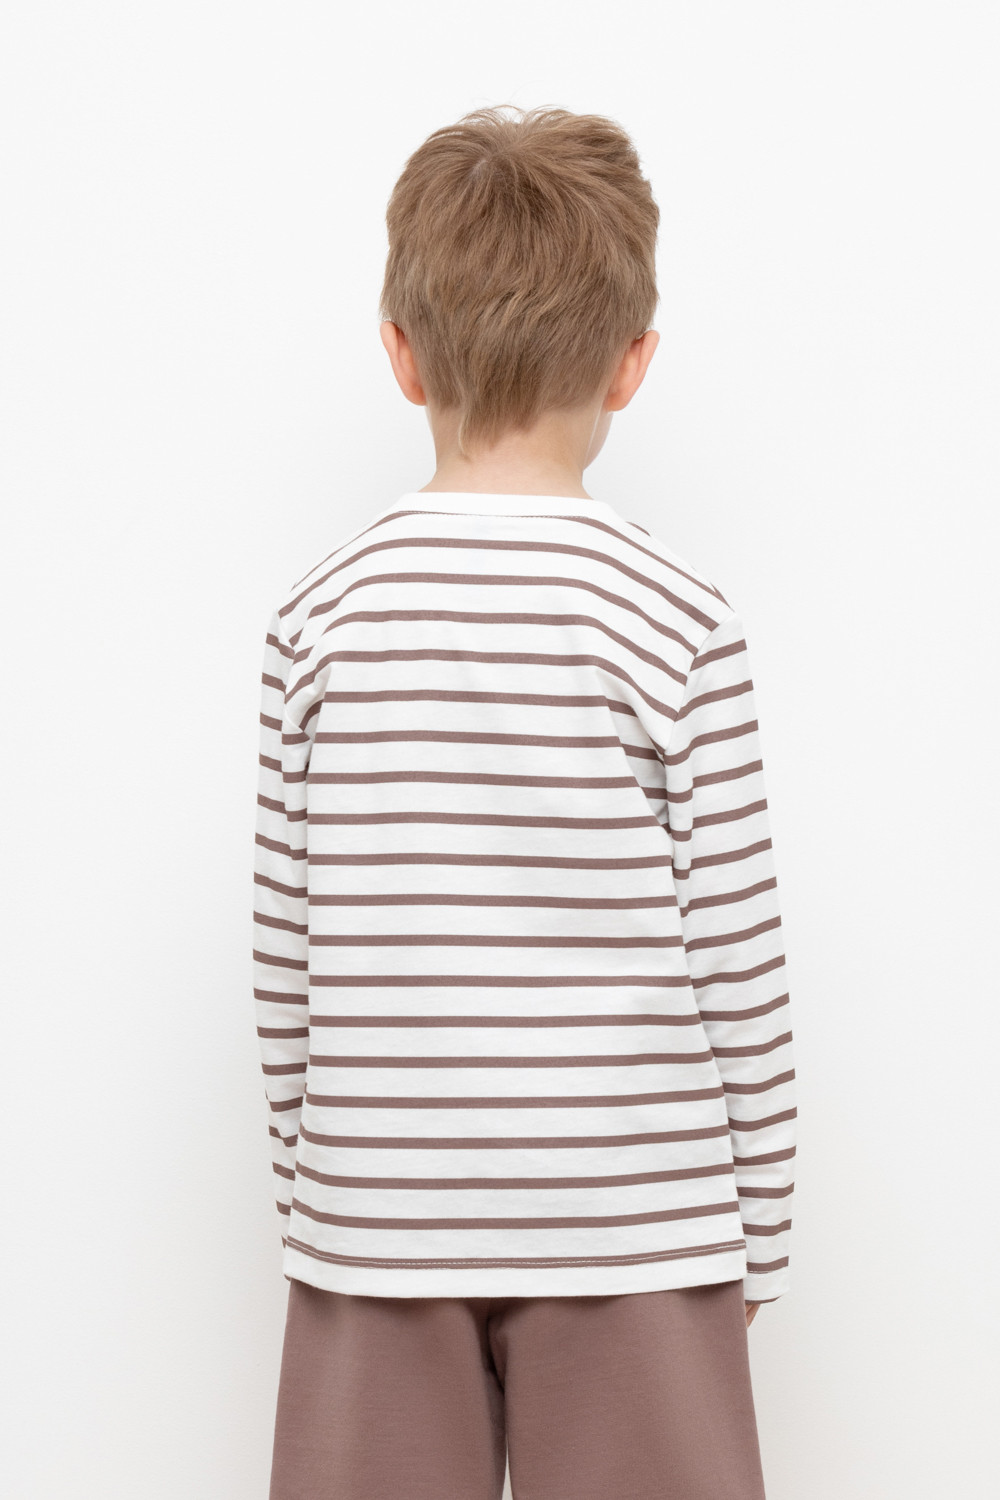 картинка Джемпер для мальчика Crockid КР 302194 белая лилия, полоска к412 от магазина детских товаров ALiSa